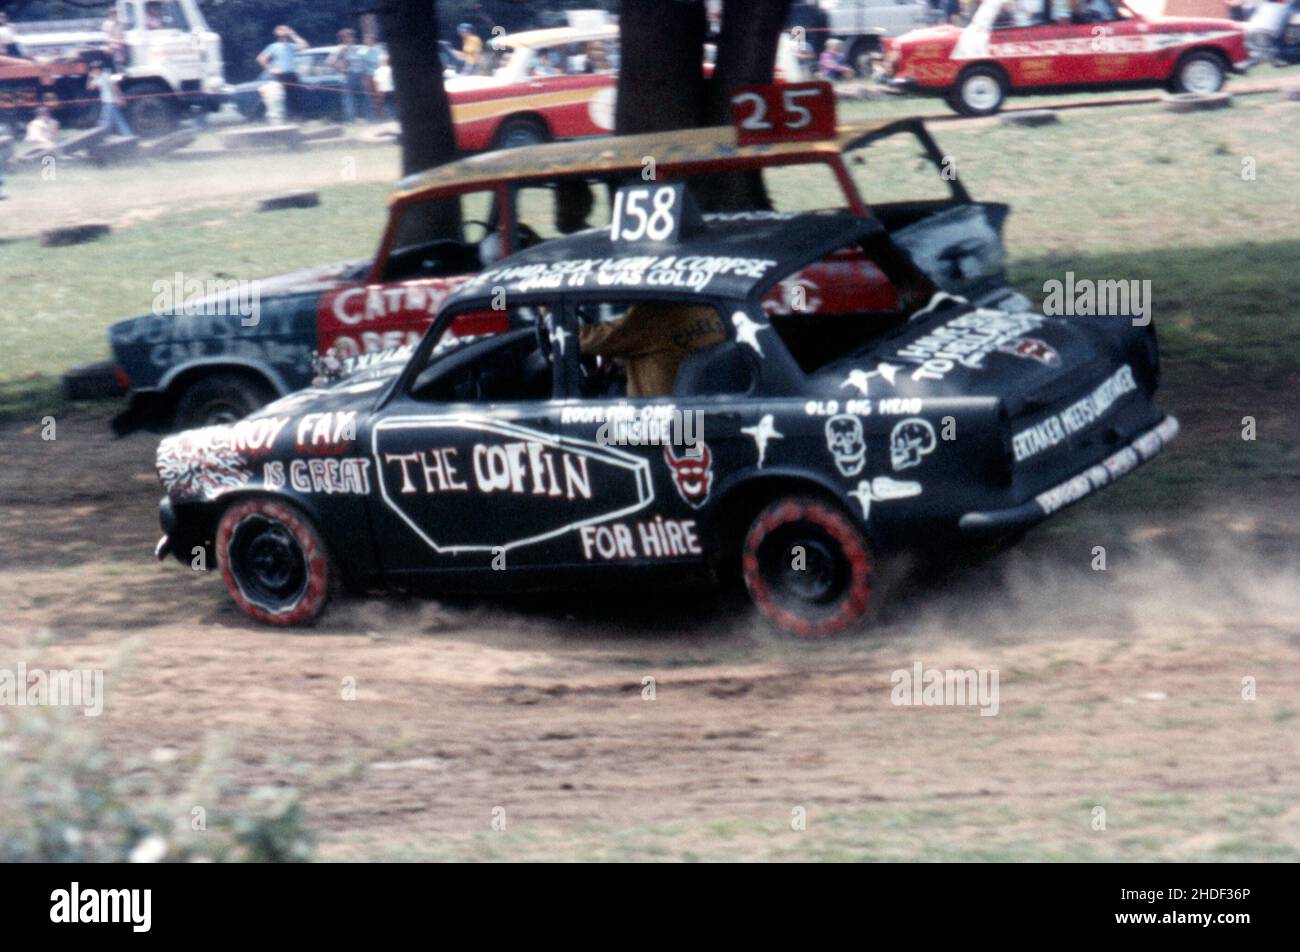 Banger Racing mit bunt bemalten Autos mit Namen wie der Coffin. 1970s, Motorsport Stockfoto